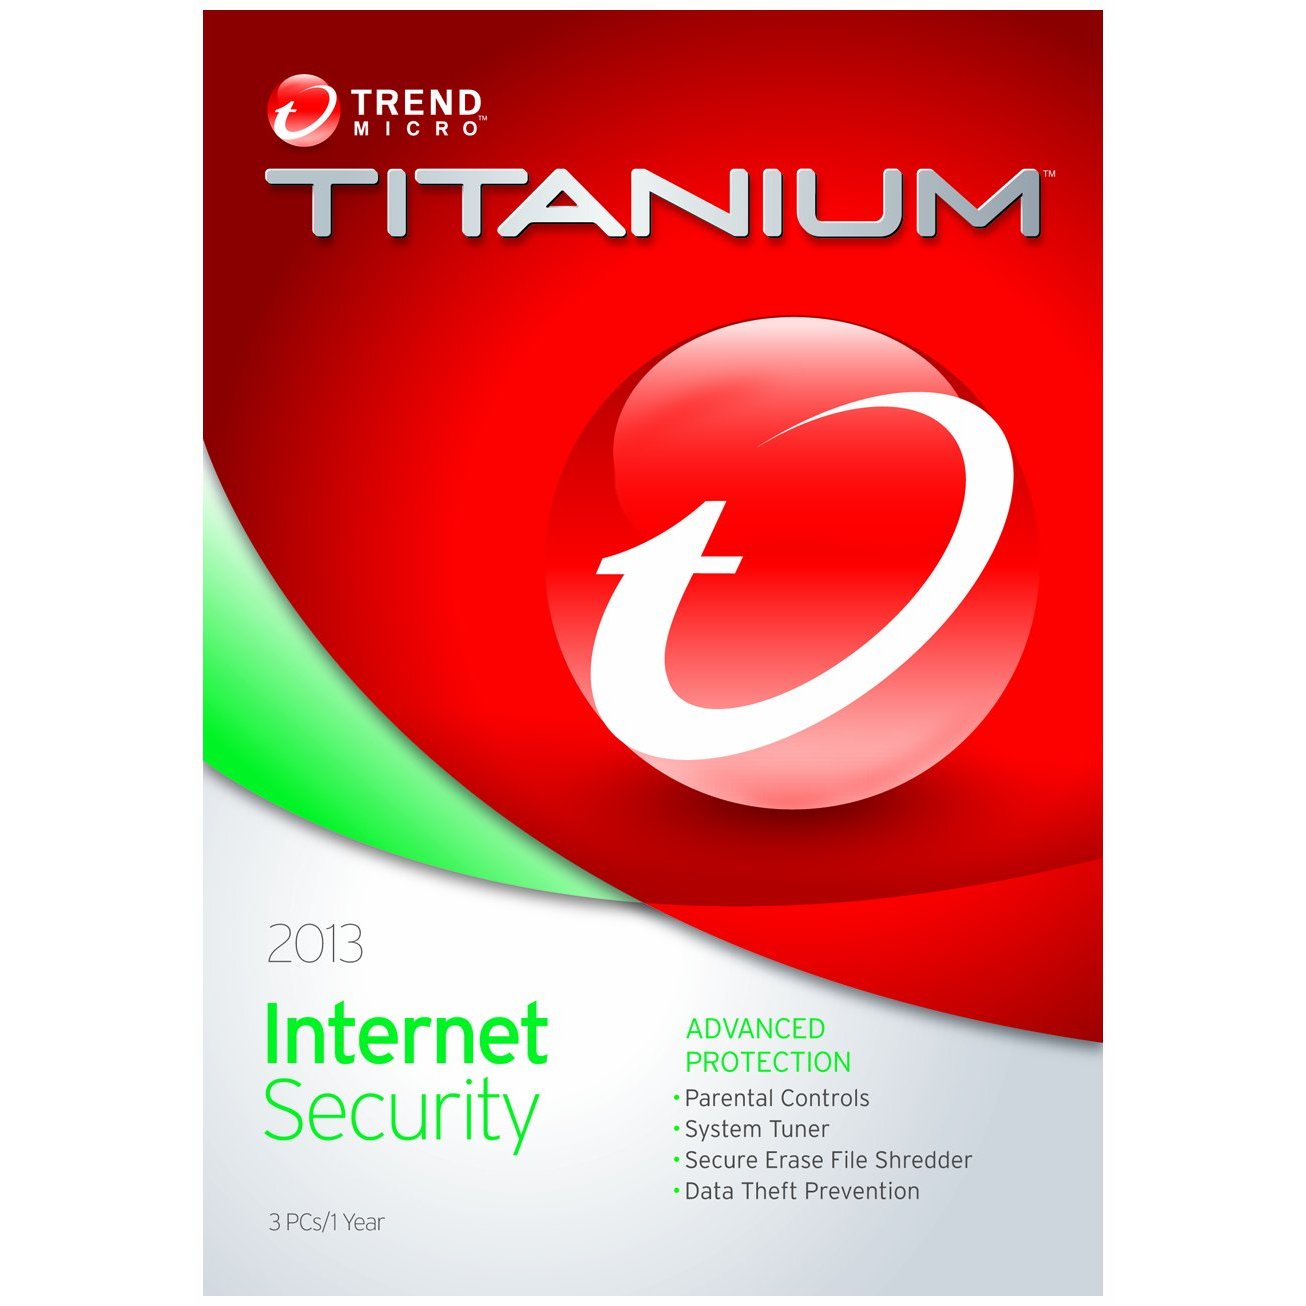 Trend Micro Titanium Internet Security Serial Key